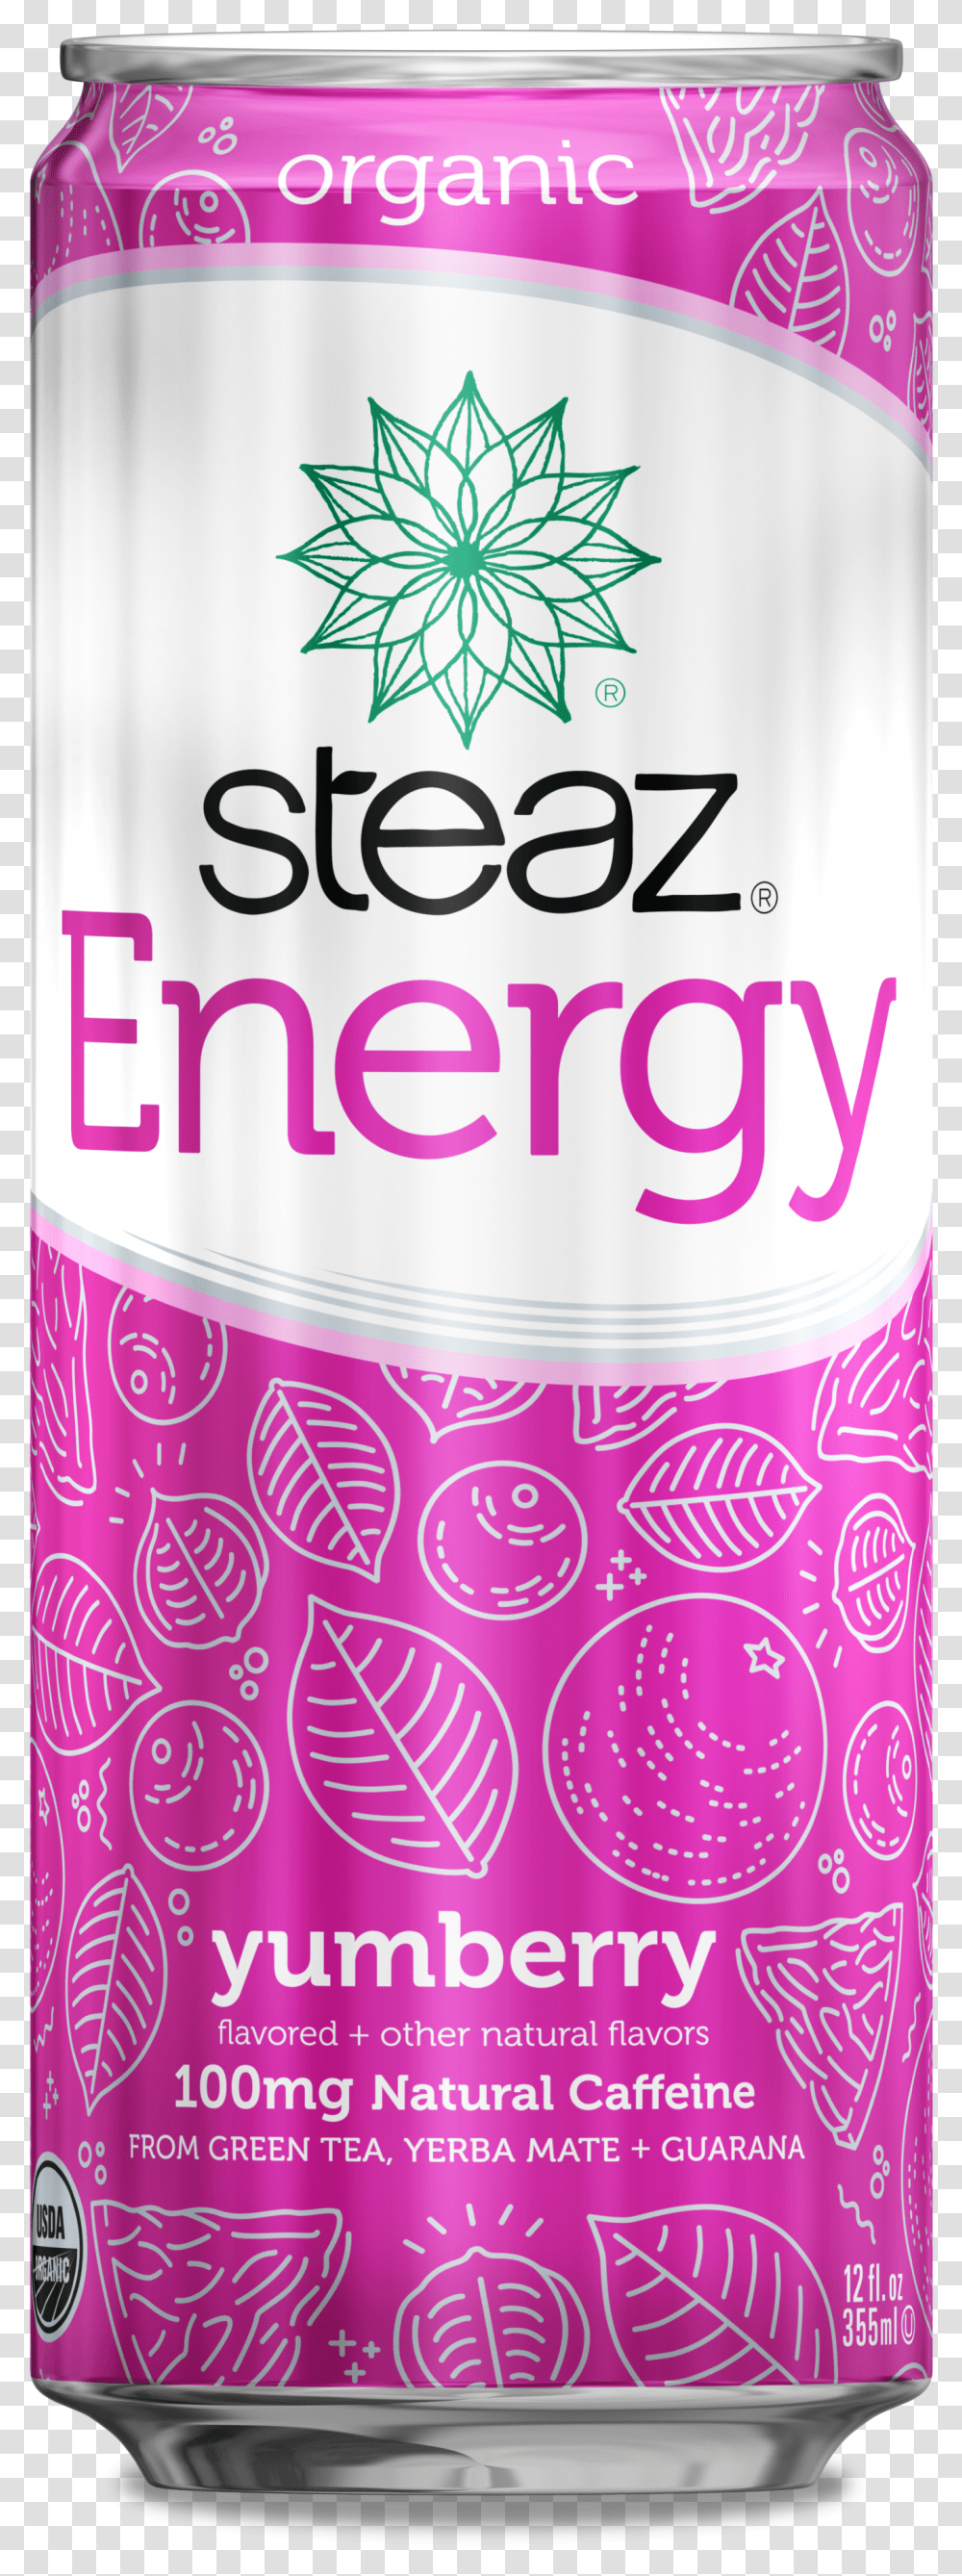 Image Steaz Energy Drink Transparent Png